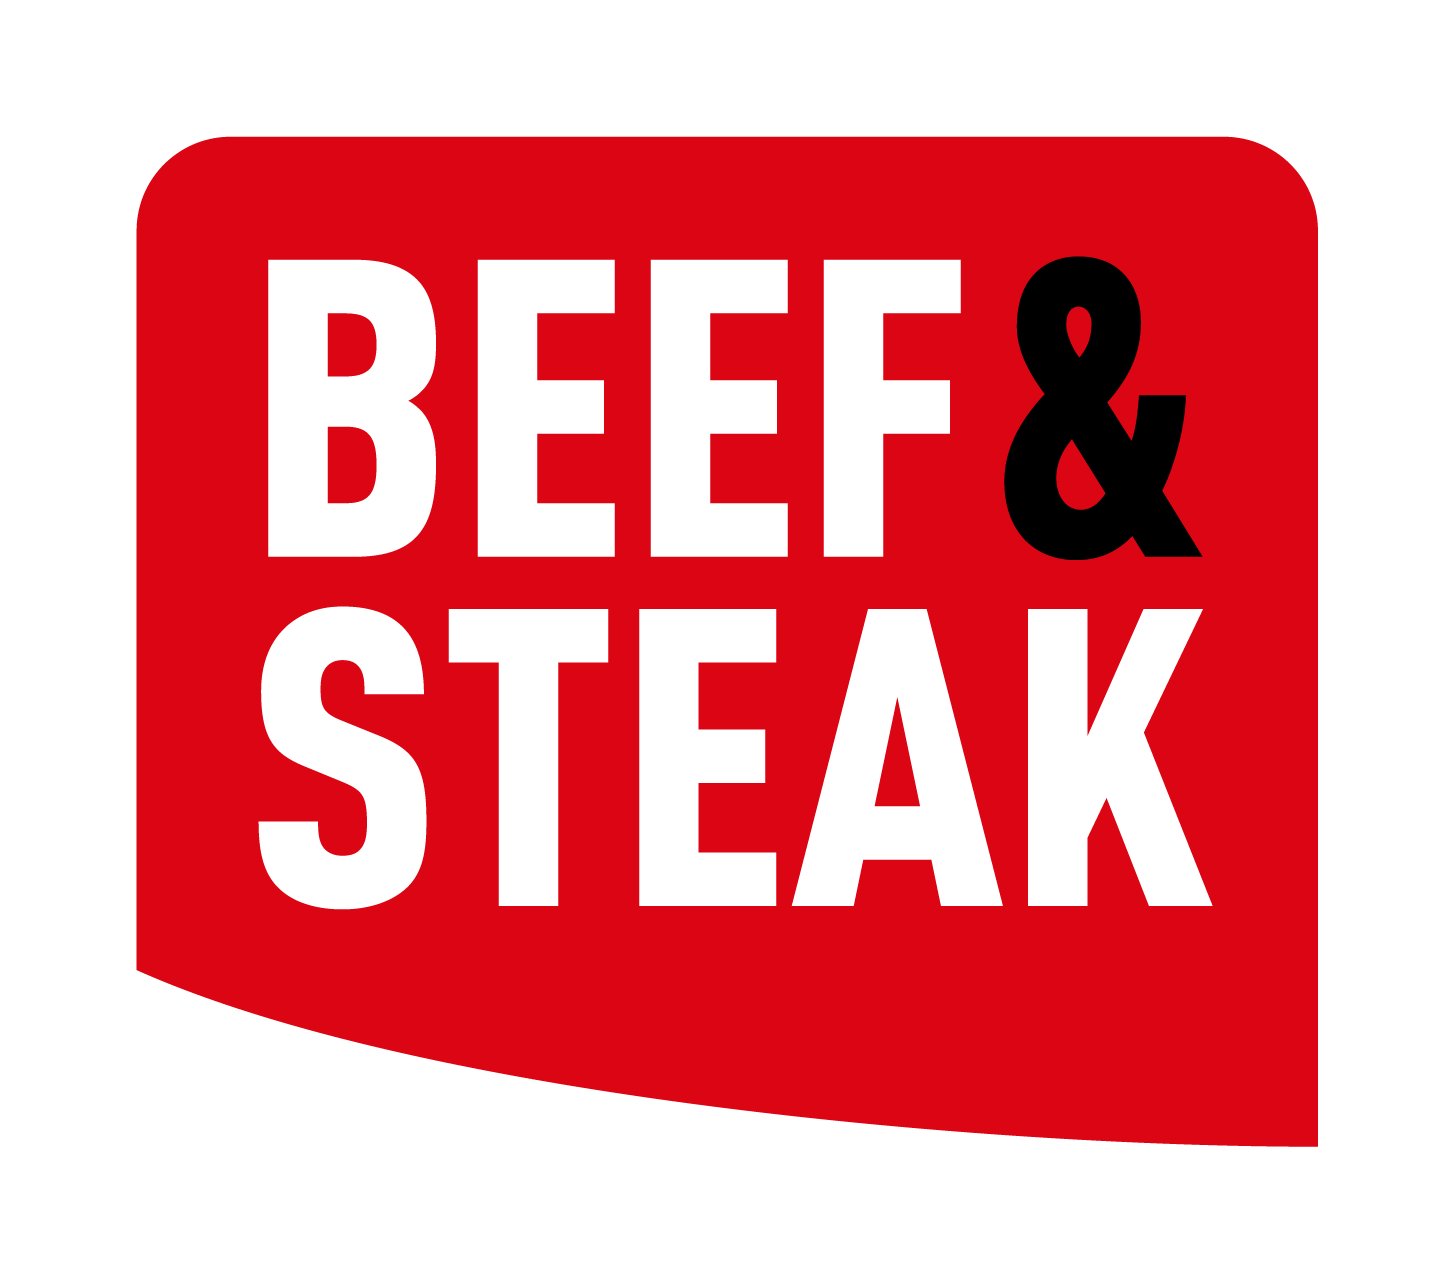 Aberdeen Angus T-bone Steak